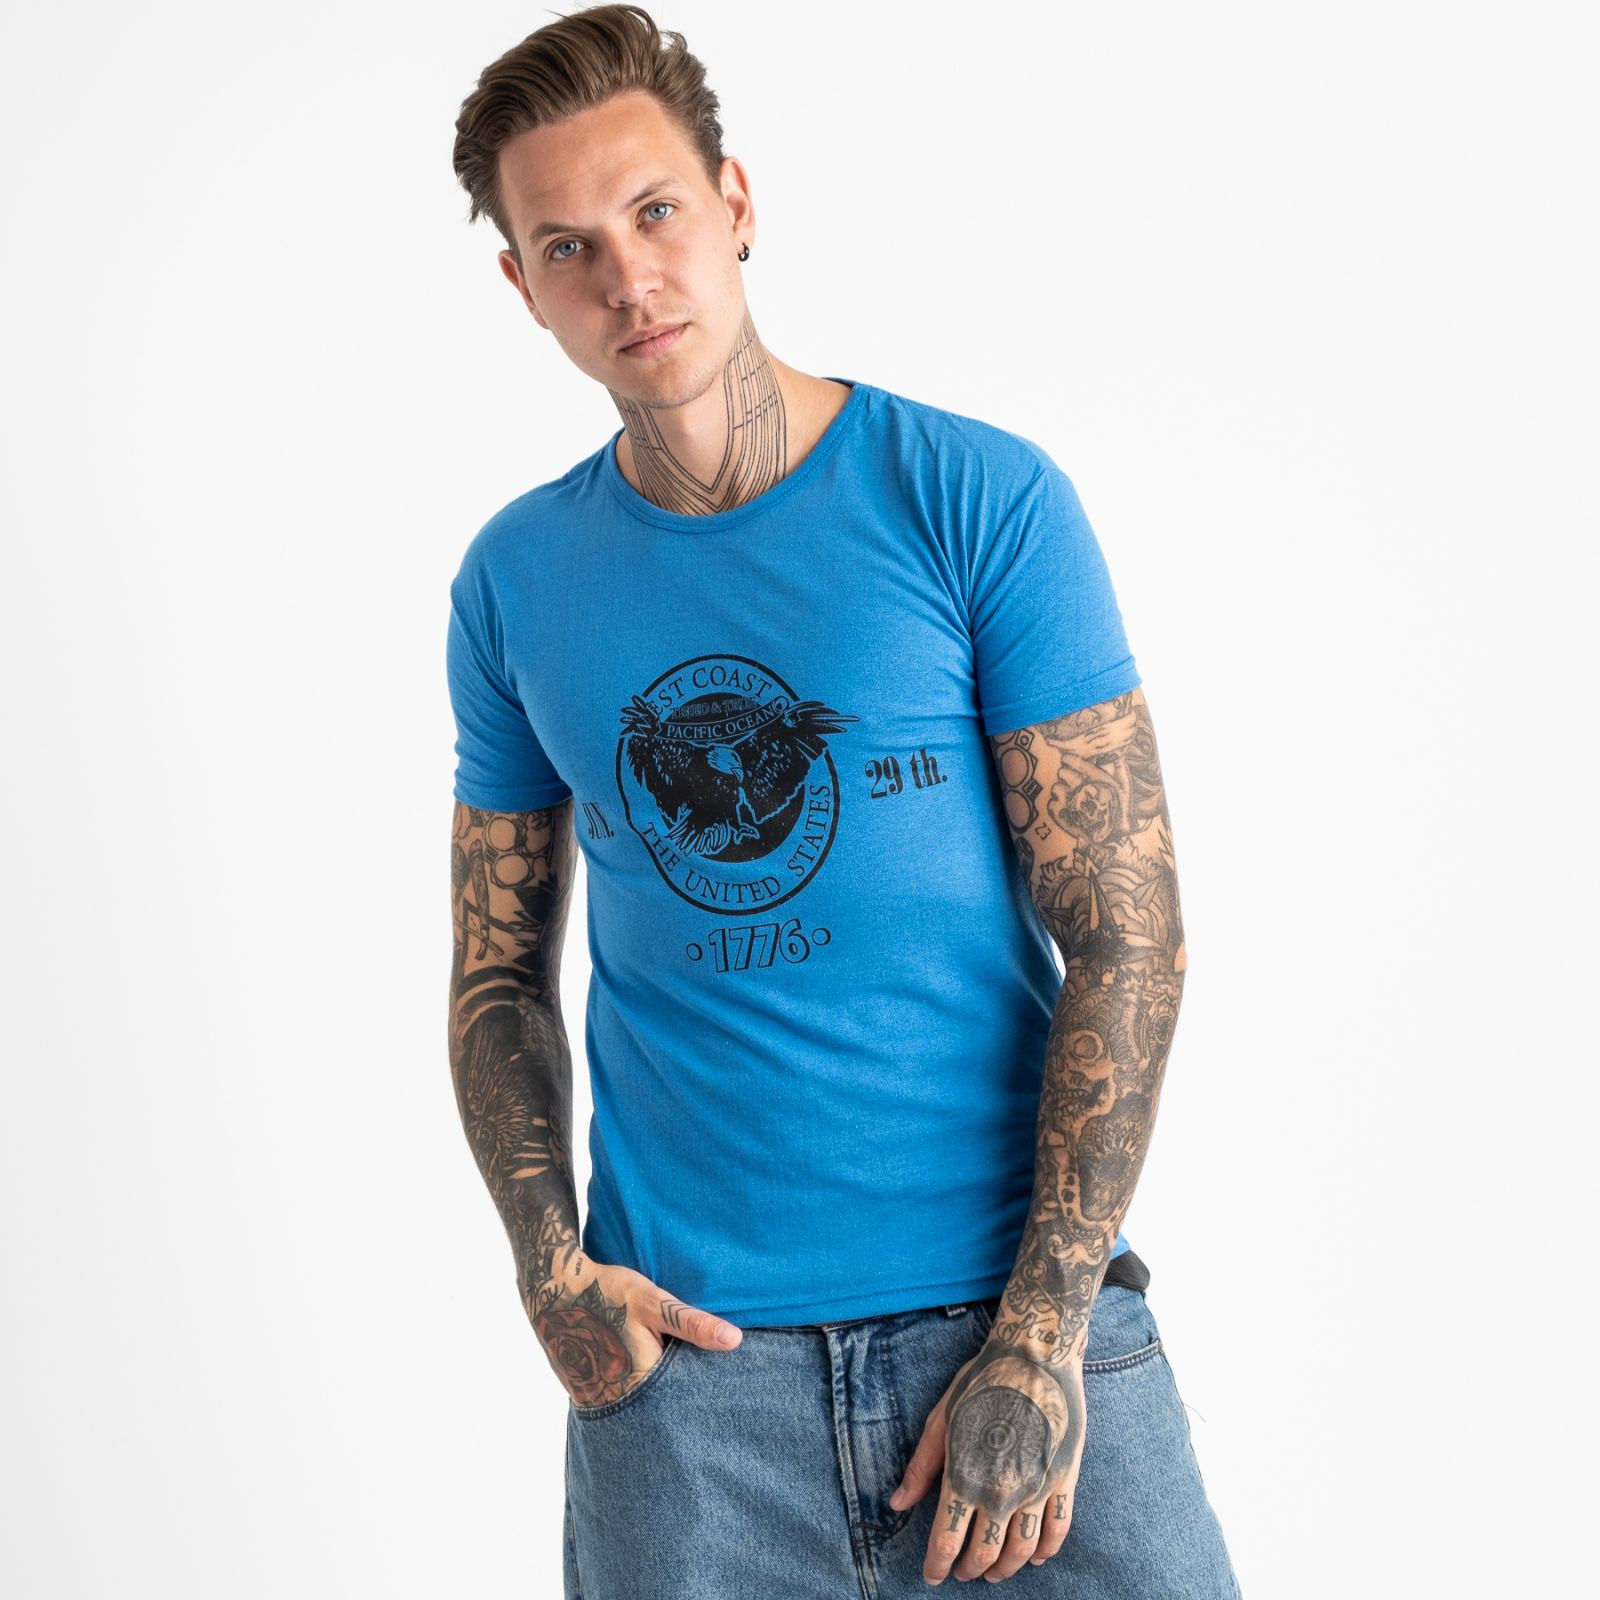 2606-12 темно-голубая футболка мужская с принтом (4 ед. размеры: M.L.XL.2XL)